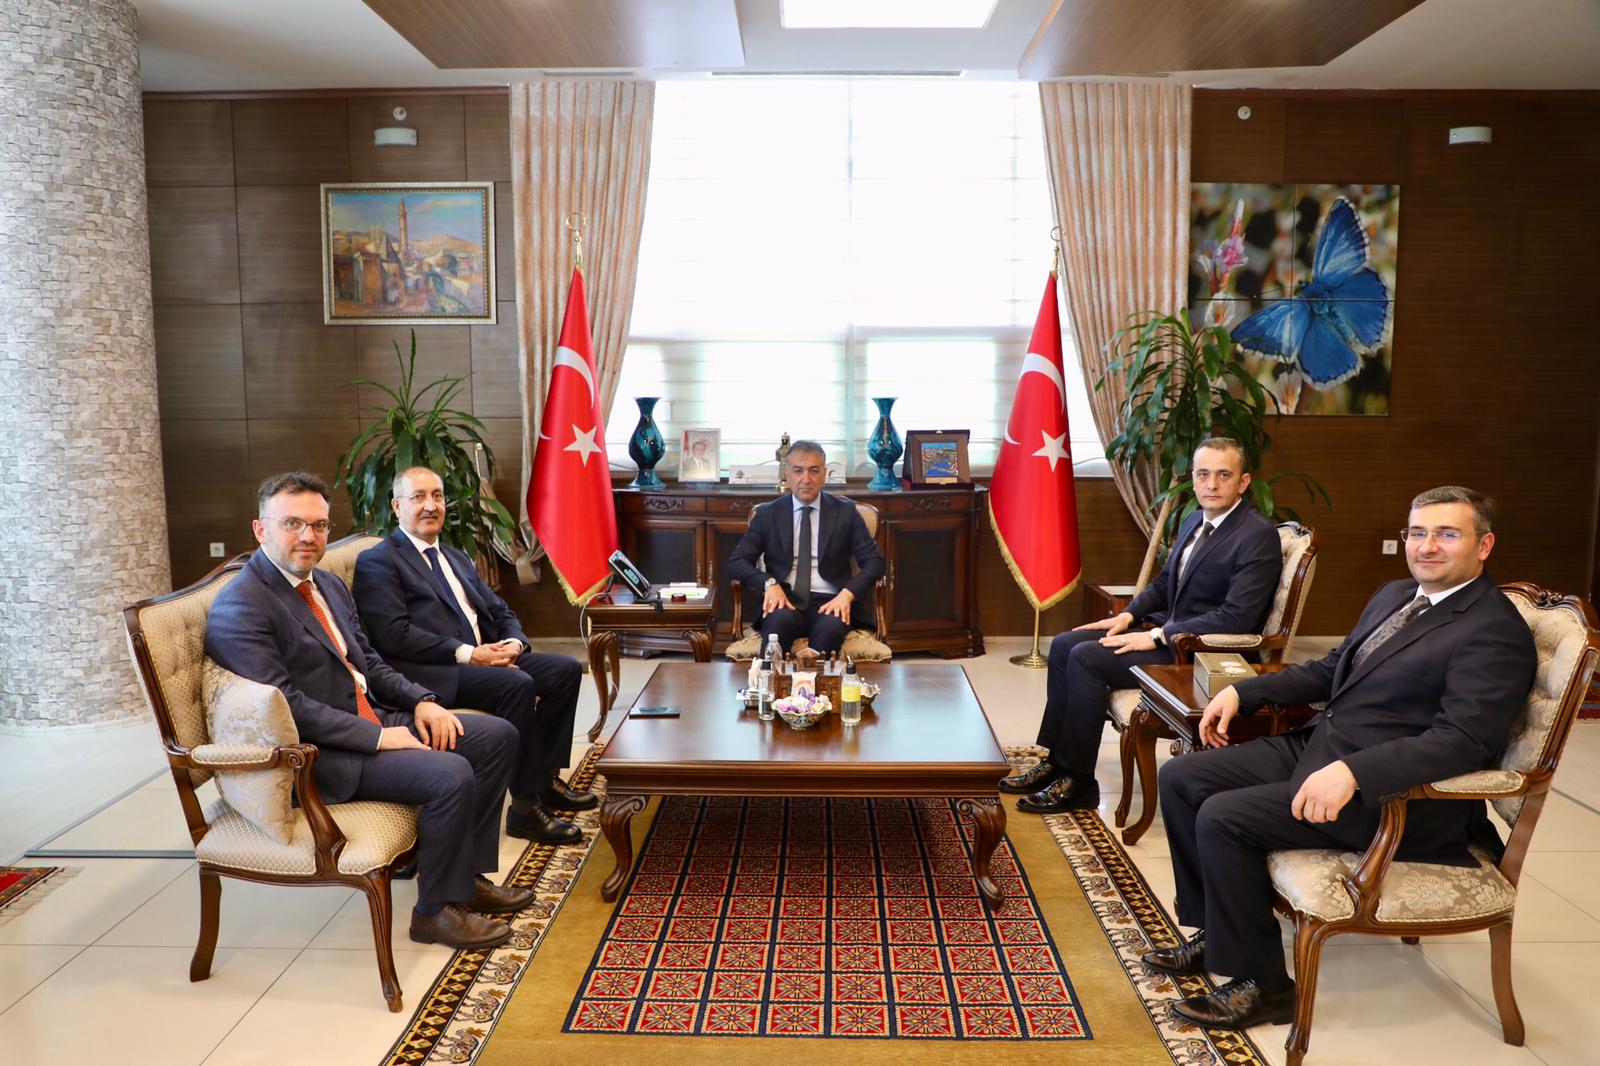 BİK Genel Müdürü Cavit Erkılınç, Bitlis Valisi Oktay Çağatay’a ziyarette bulundu